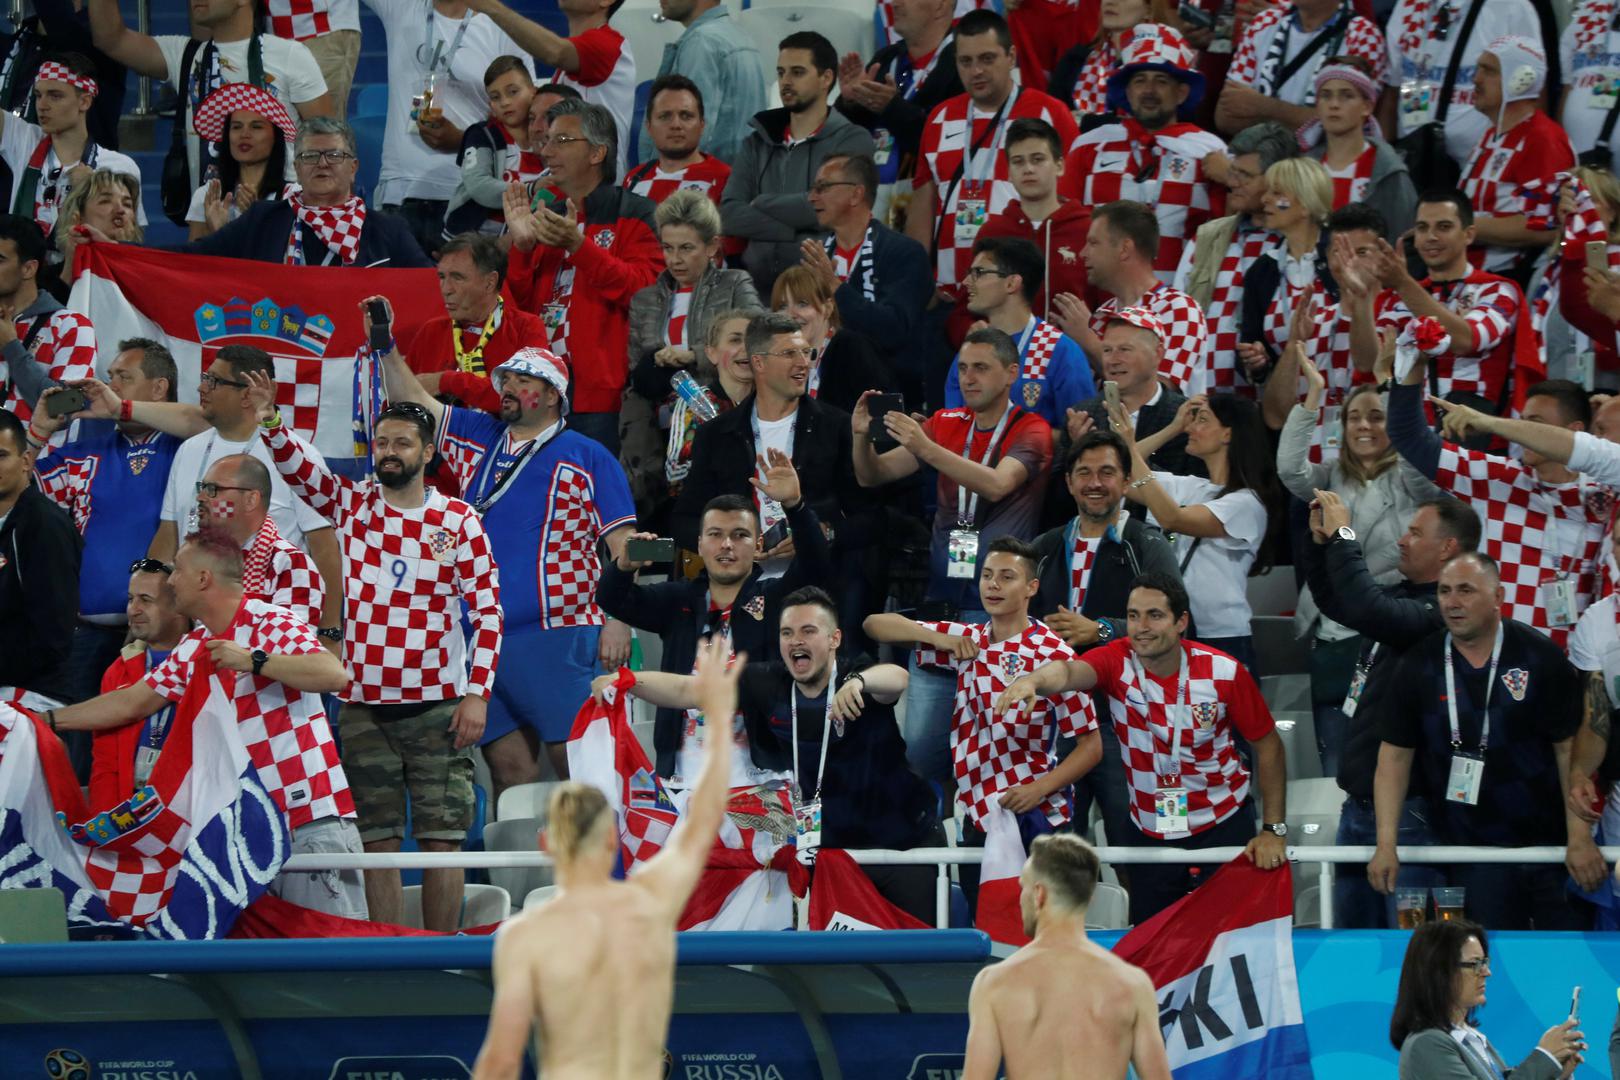 Hrvatske zastave i transparenti bili su izvješeni na svim sektorima, pa čak i na dijelu tribine koja je bila osigurana za navijače 'Super orlova'.